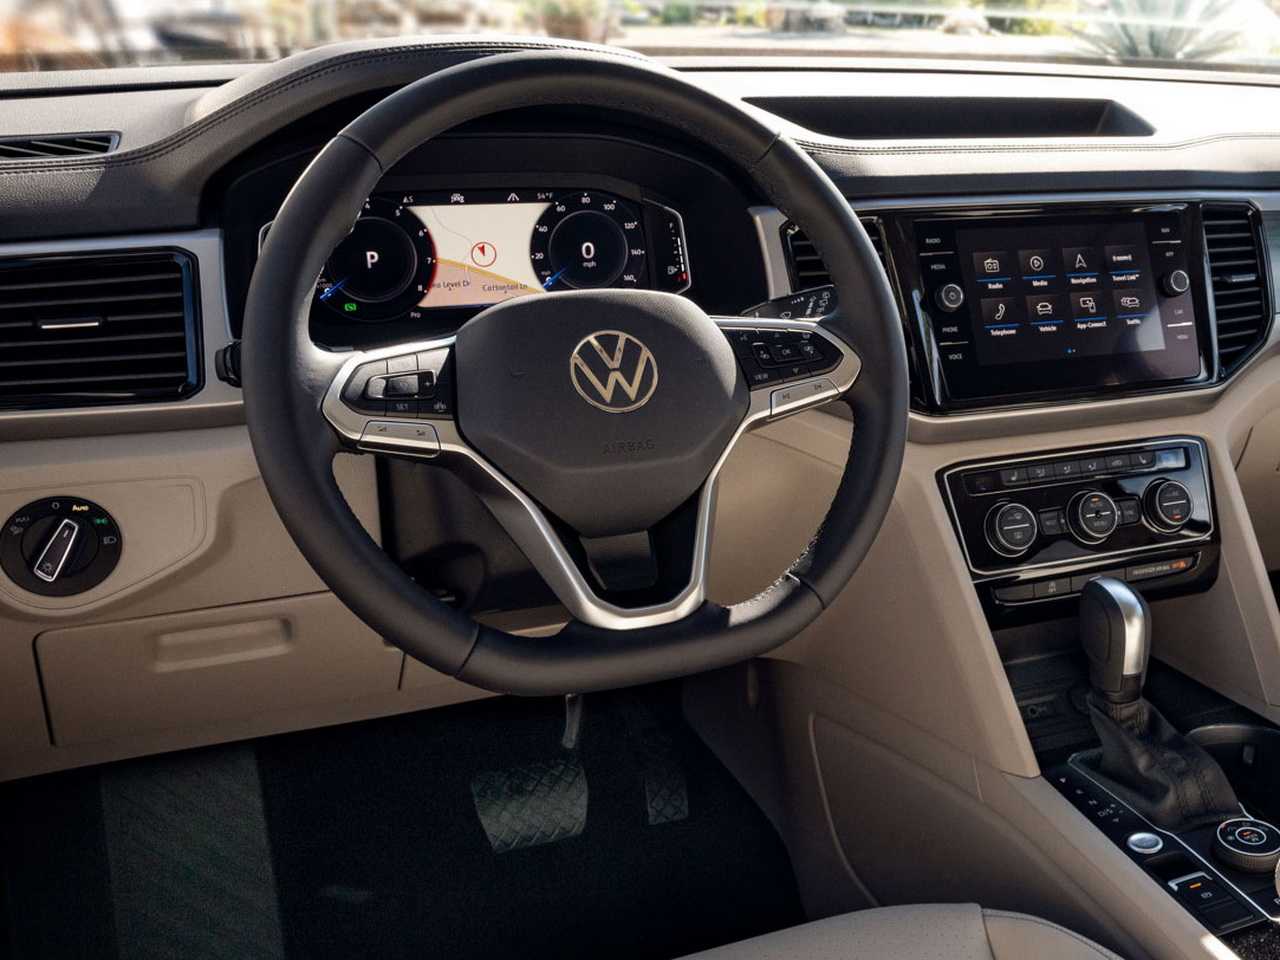 Volkswagen caddy 2020 нового поколения скоро в россии! фото, цены, комплектации